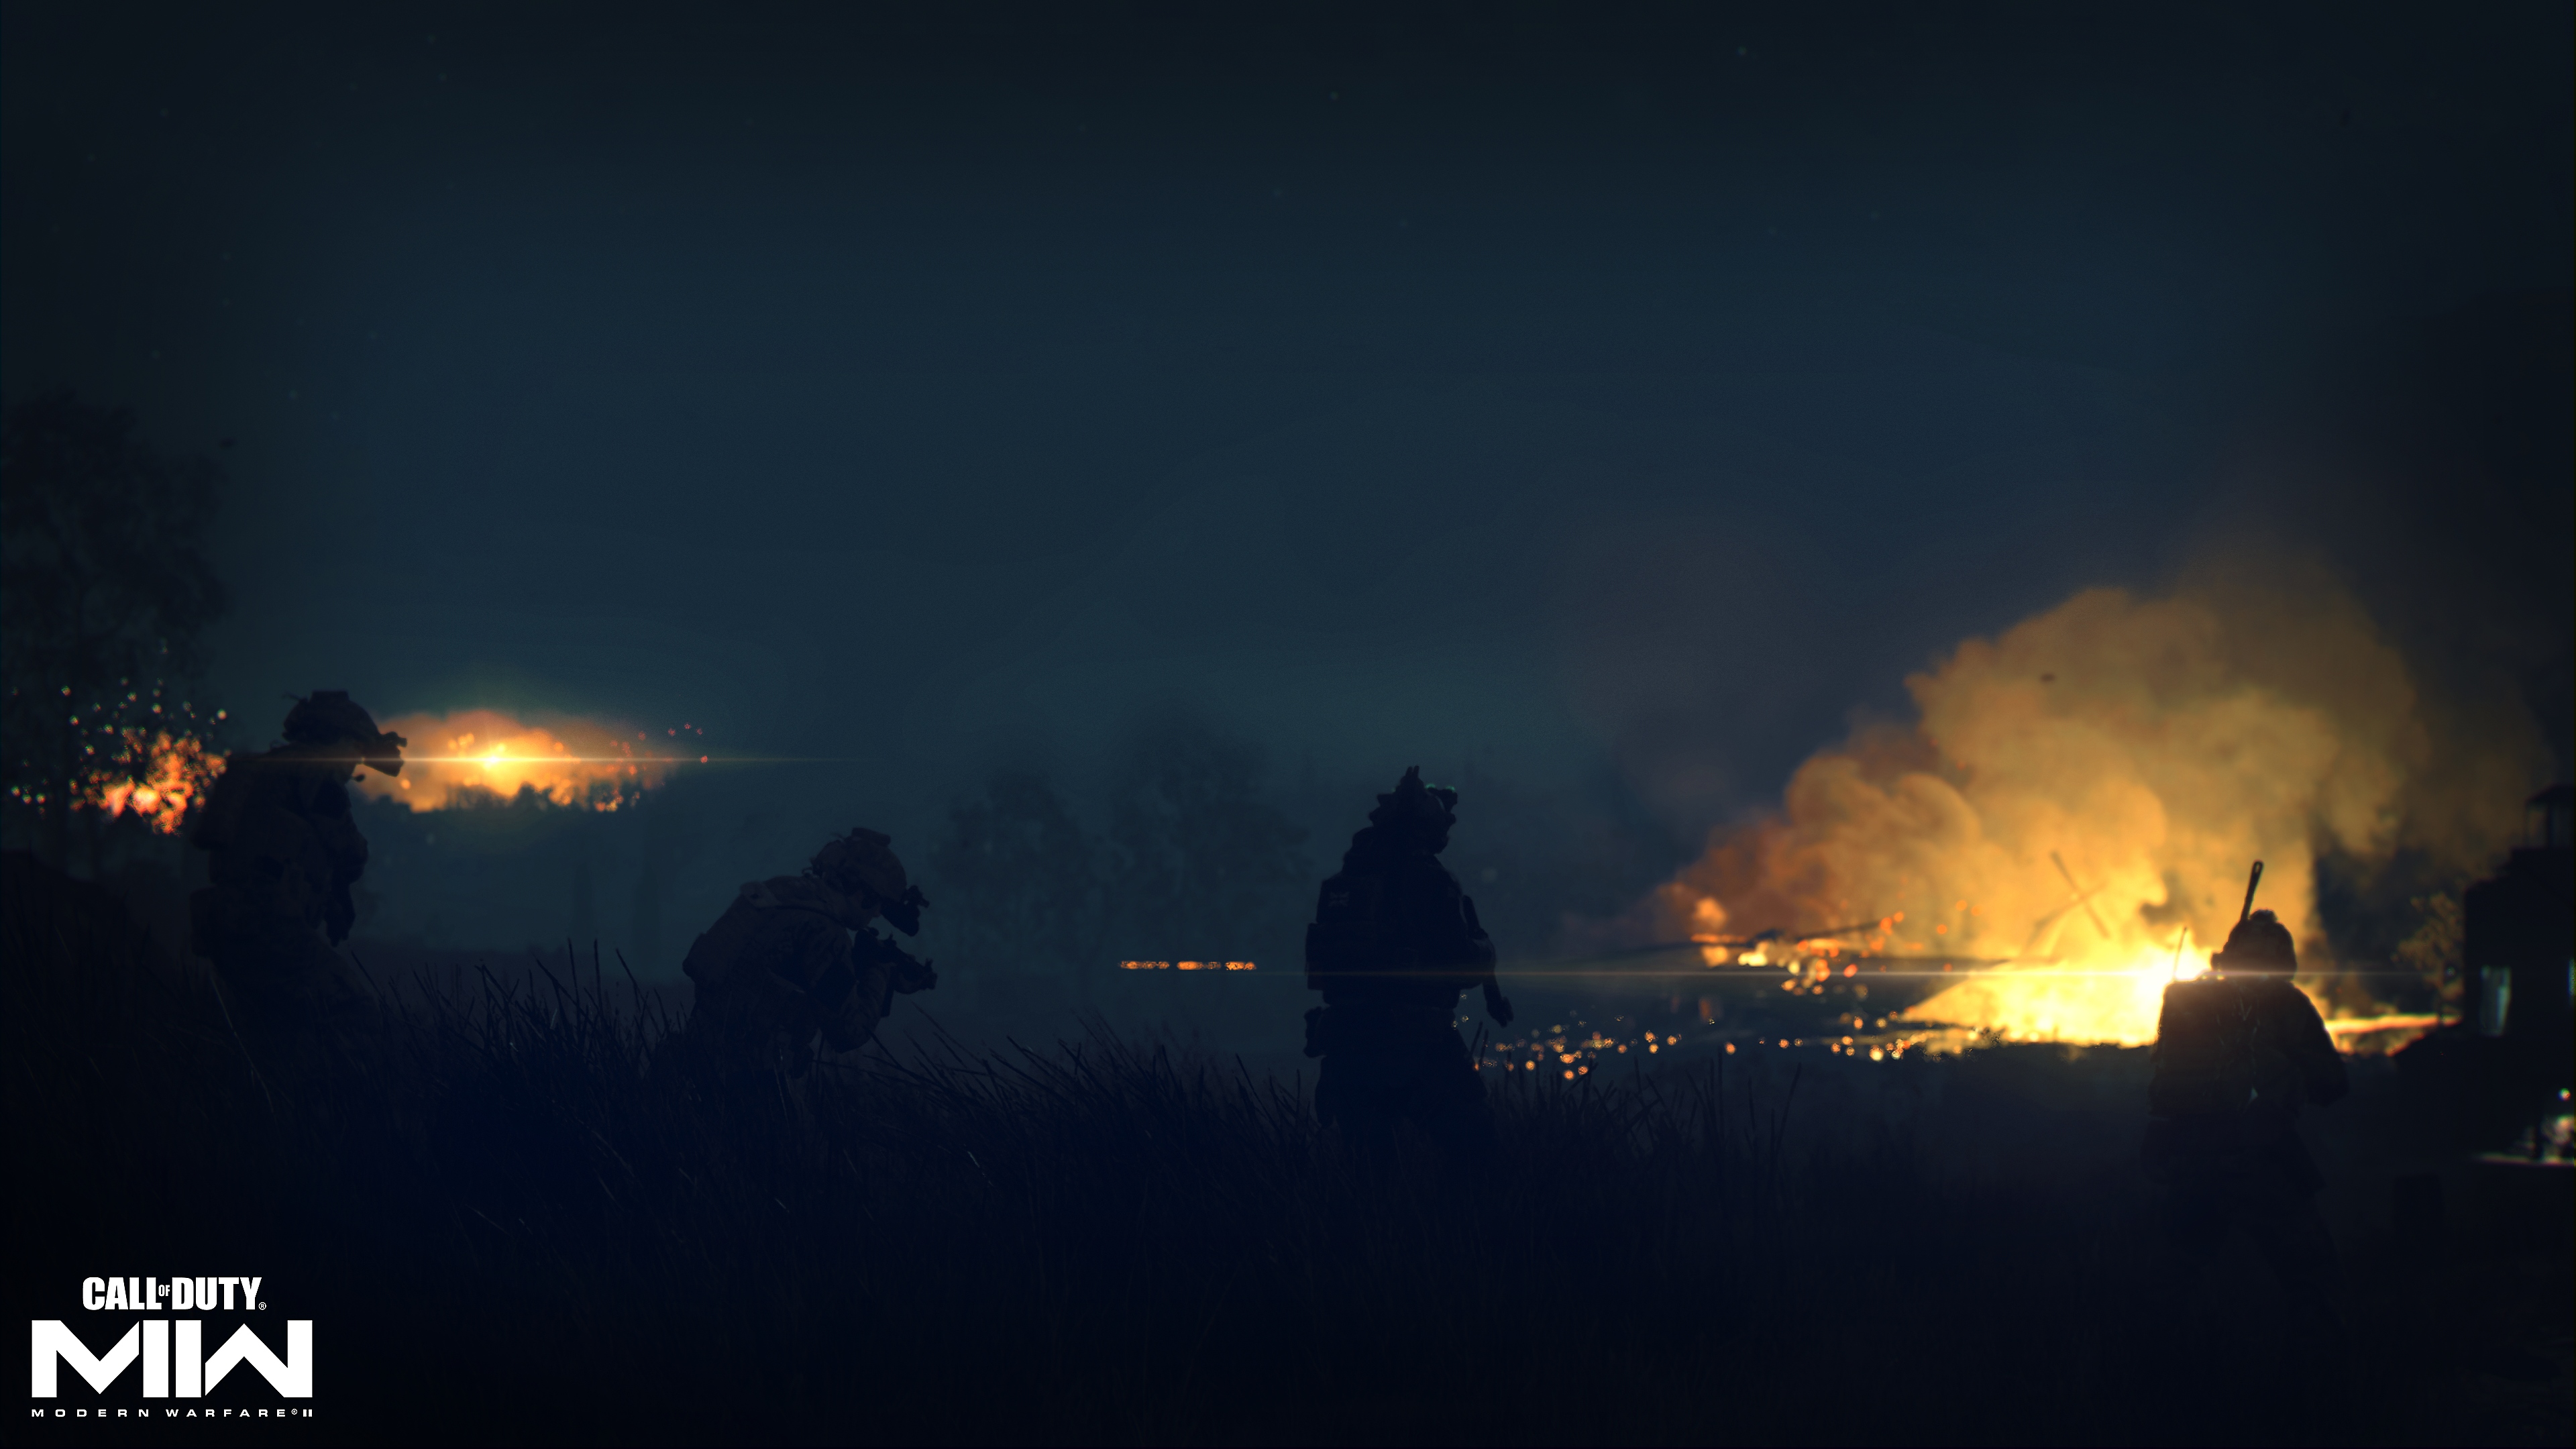 Call of Duty: Modern Warfare 2 2022 – zrzut ekranu przedstawiający ogień w oddali, w mrocznym otoczeniu